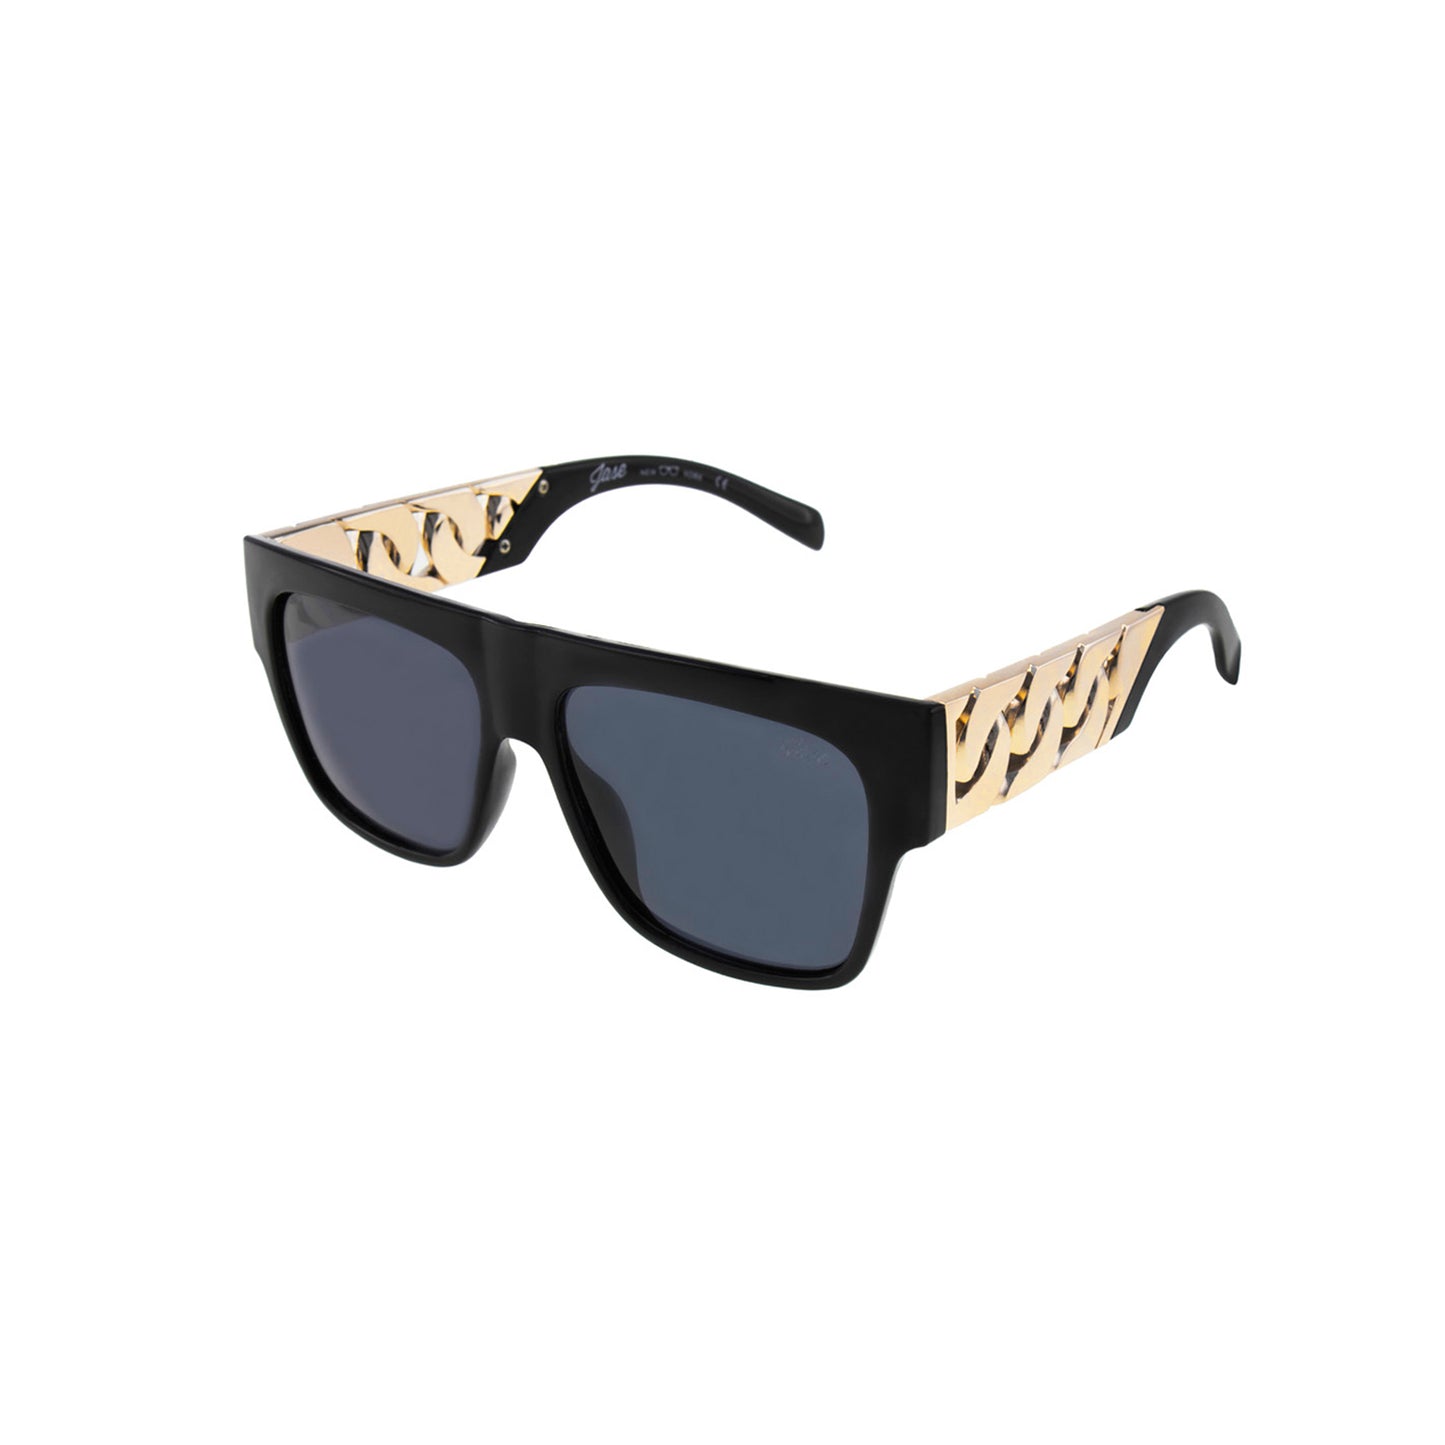 New Style Caruso Sunglasses - Glossy Black